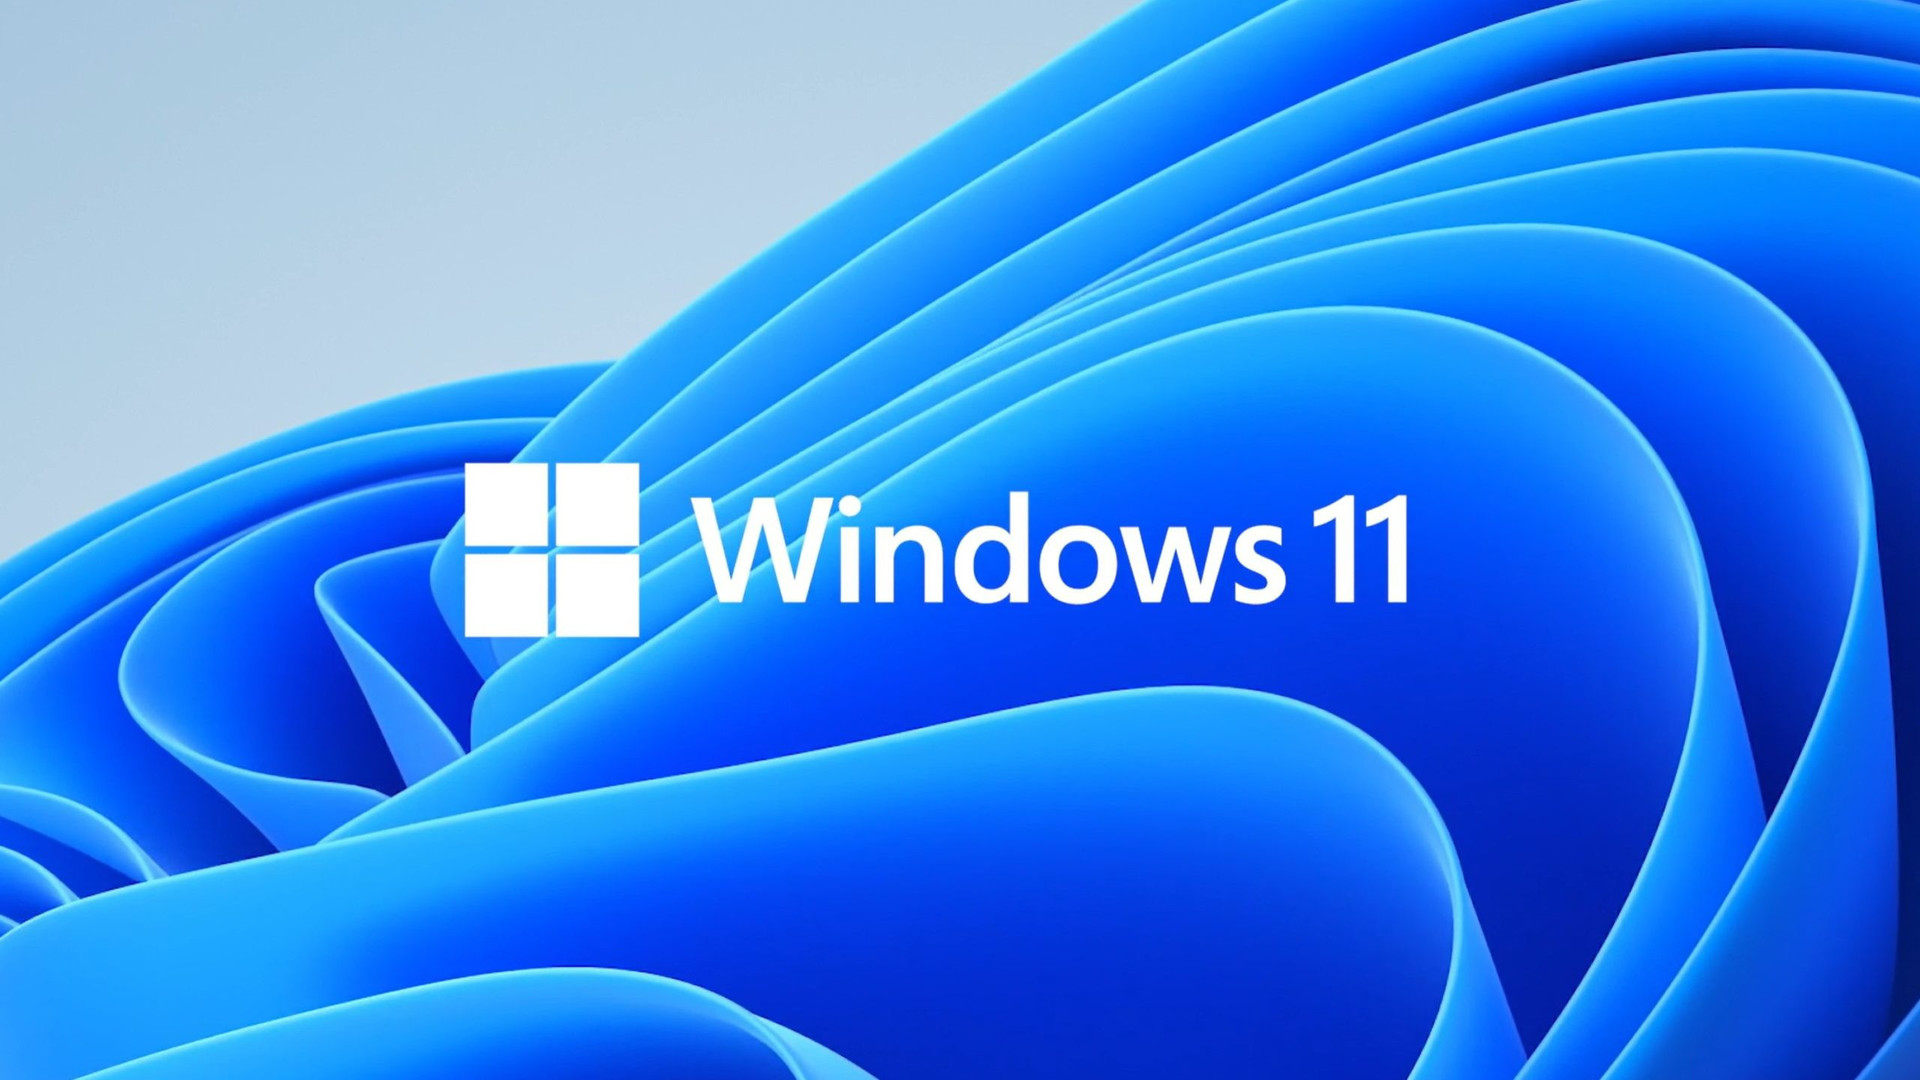 Windows 11 logo image